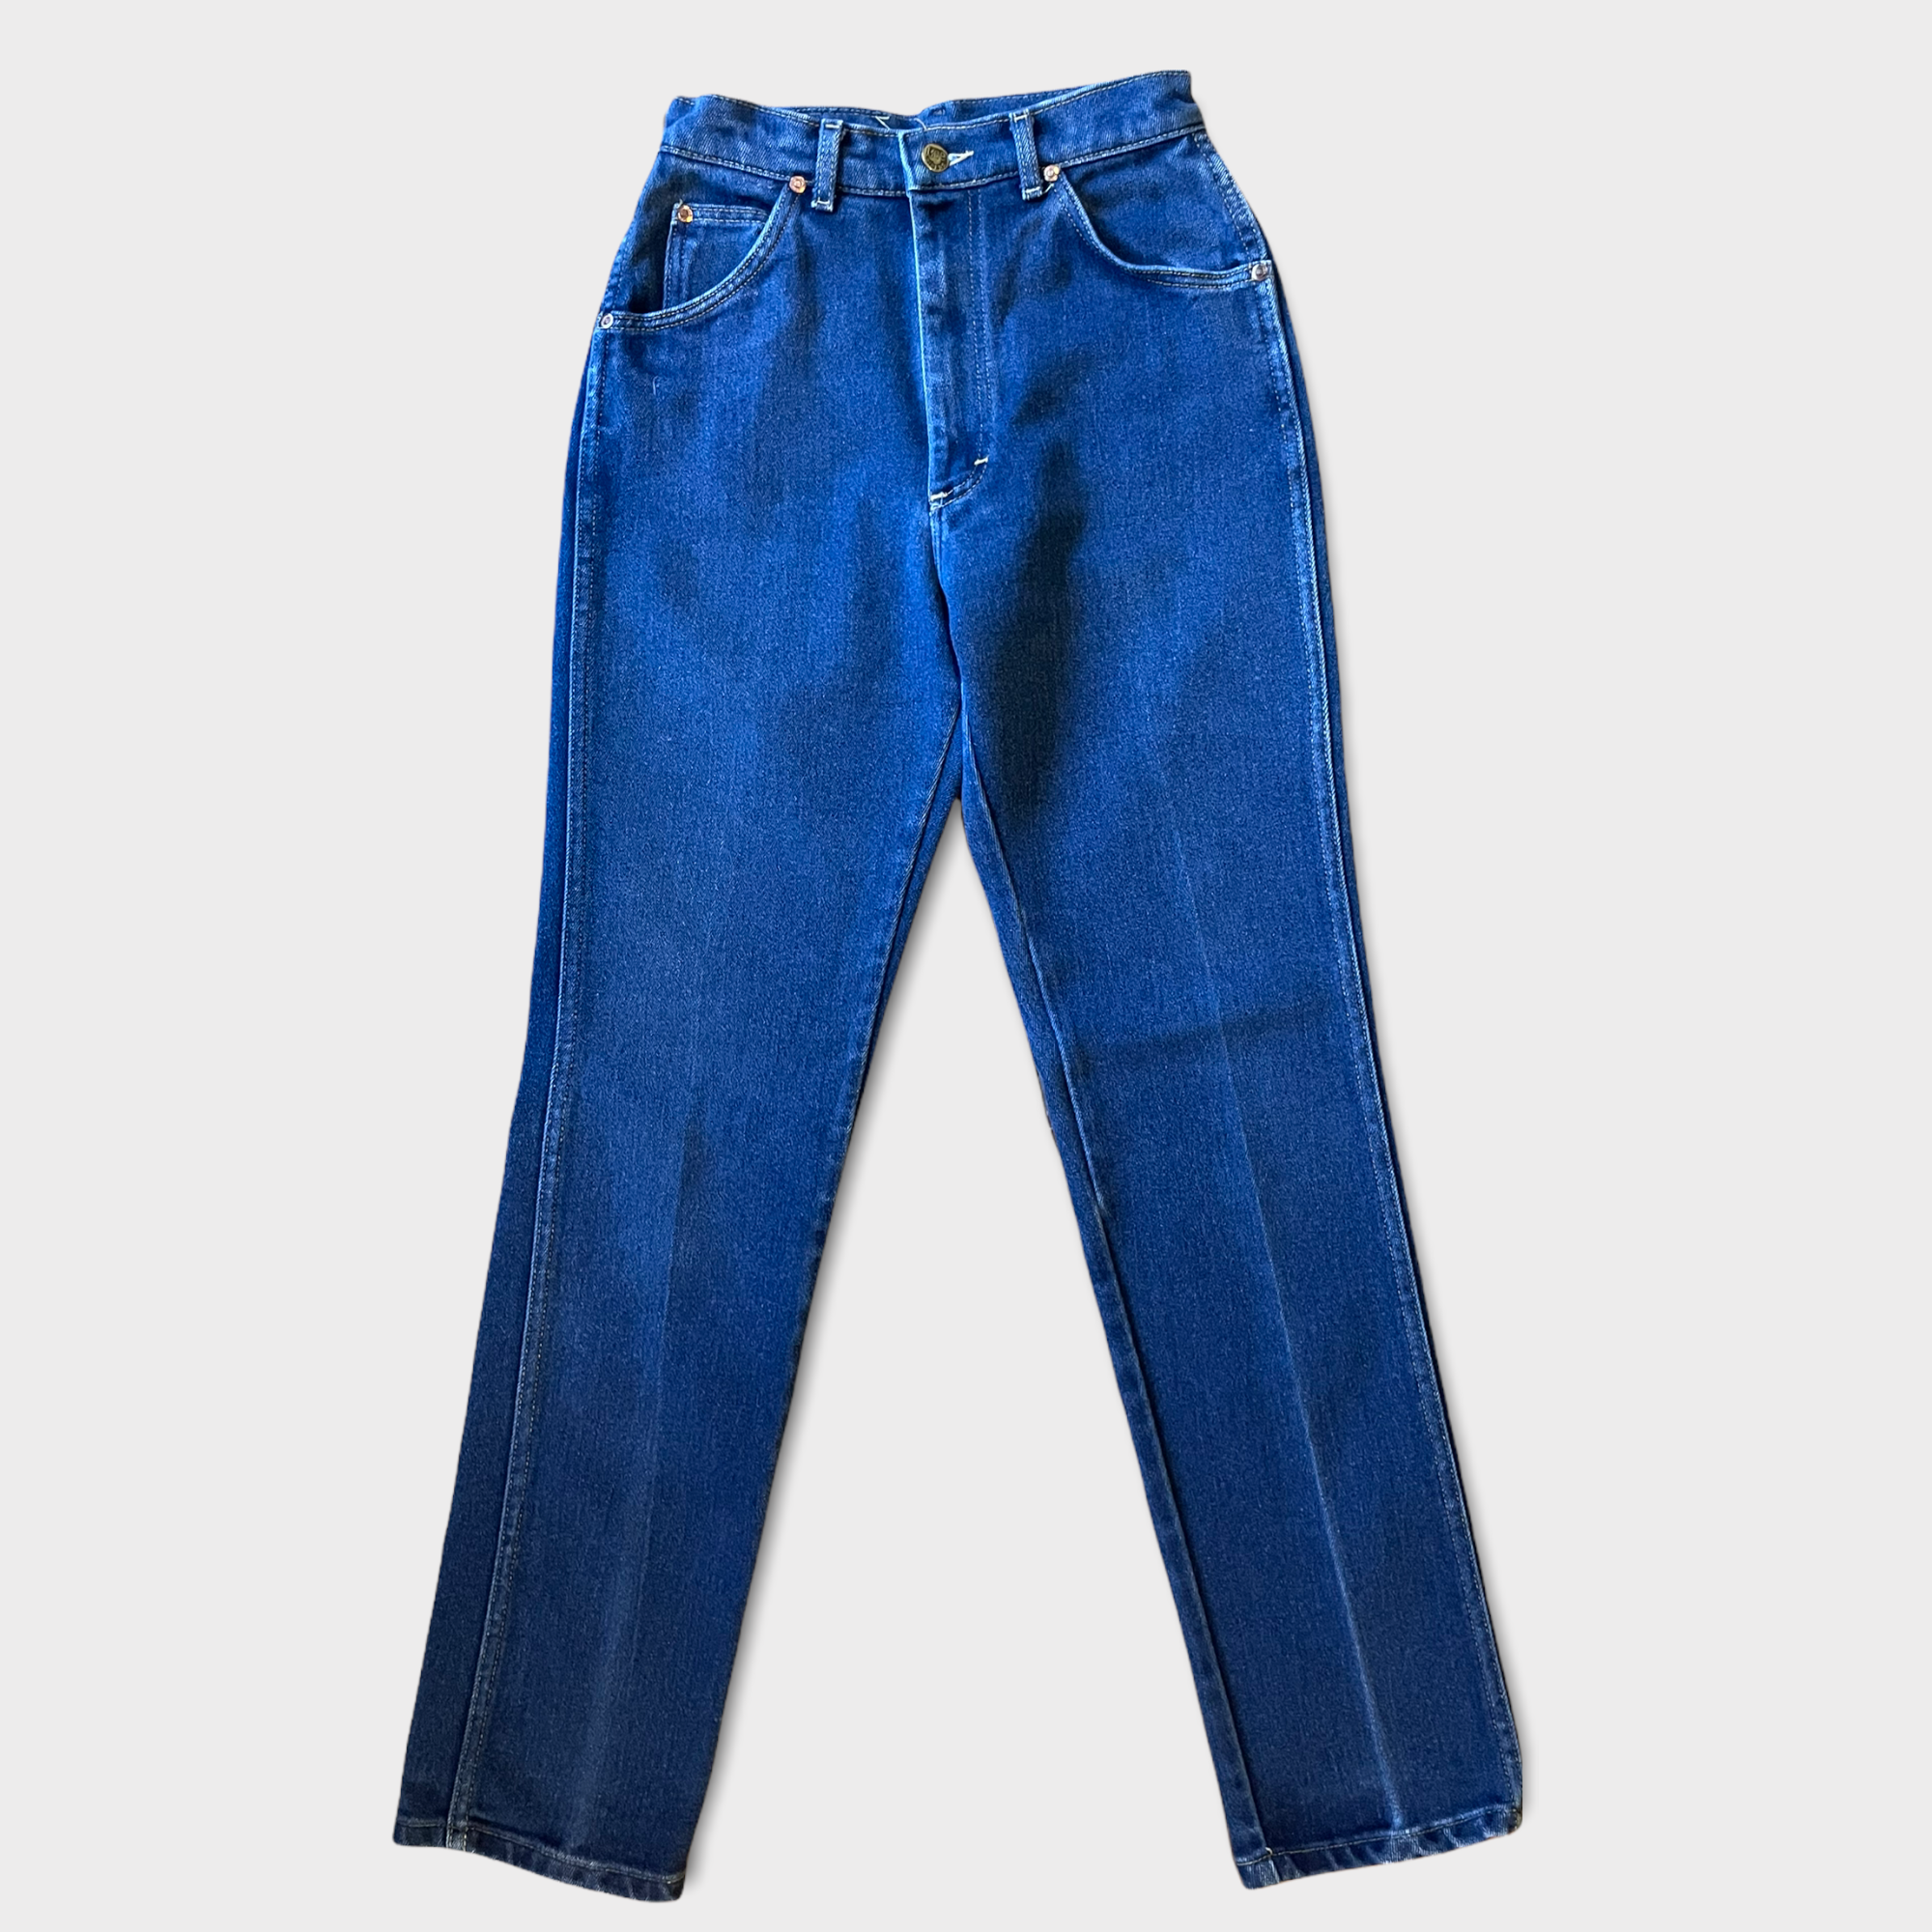 Vintage ‘Lee’ jeans 26